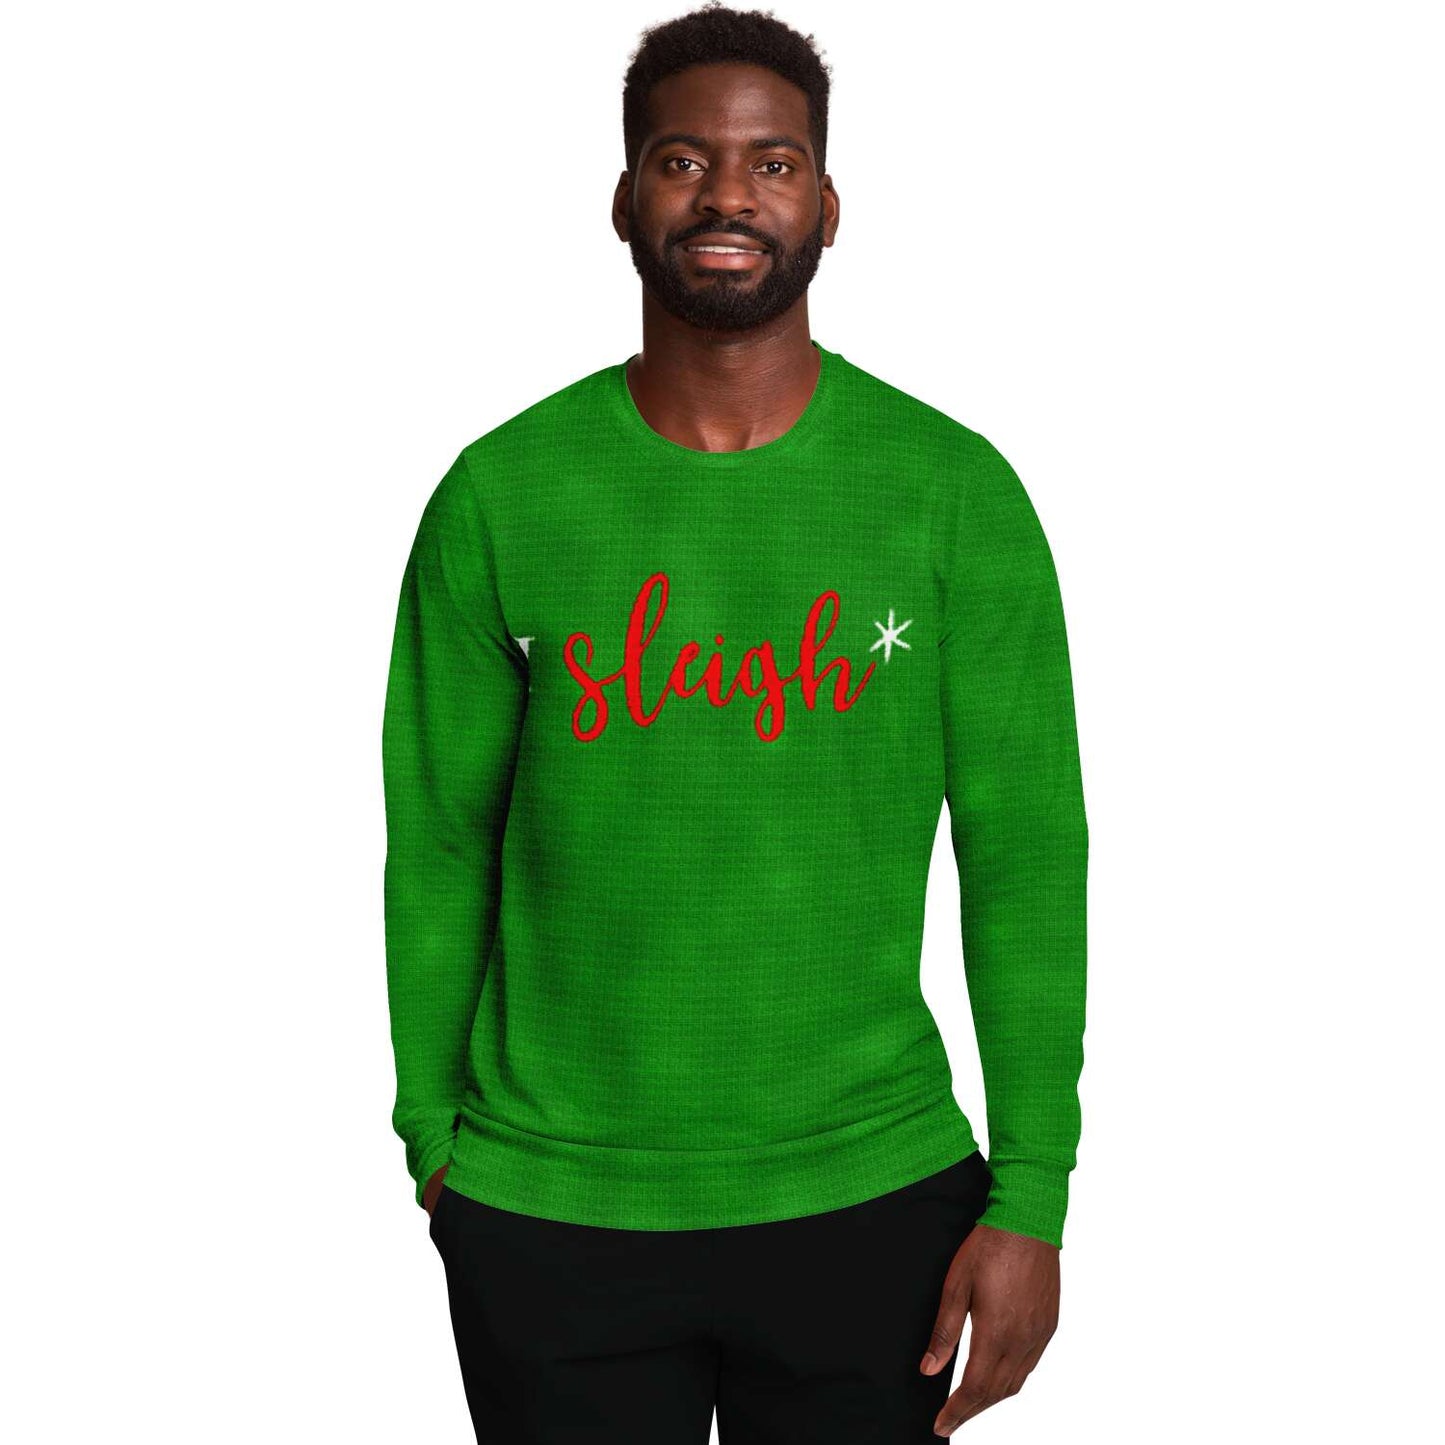 I Sleigh Funny Christmas Sweater